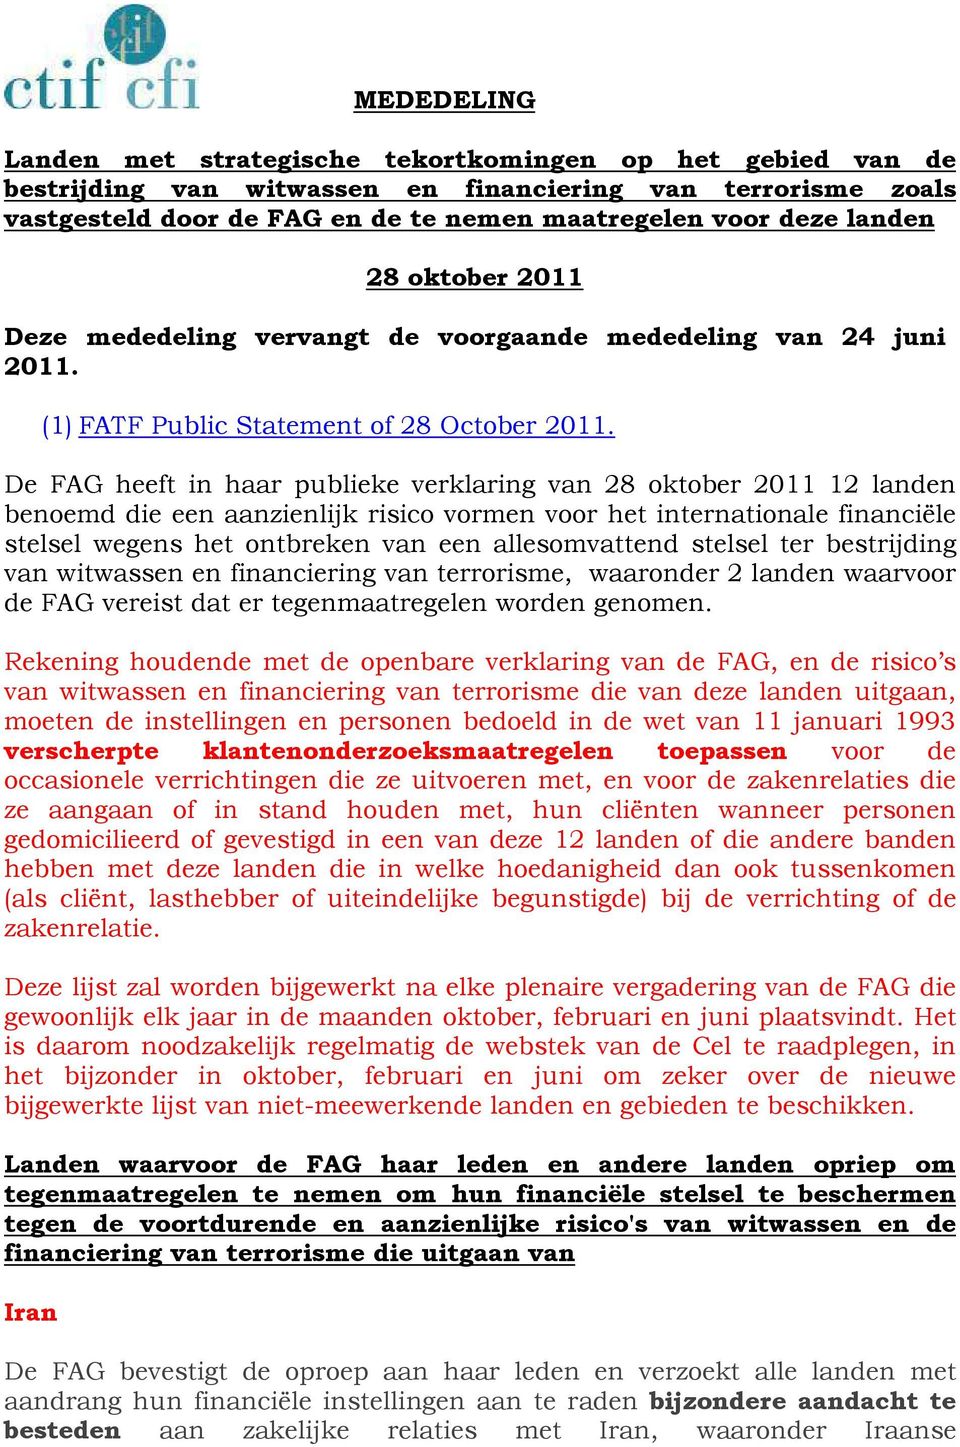 De FAG heeft in haar publieke verklaring van 28 oktober 2011 12 landen benoemd die een aanzienlijk risico vormen voor het internationale financiële stelsel wegens het ontbreken van een allesomvattend